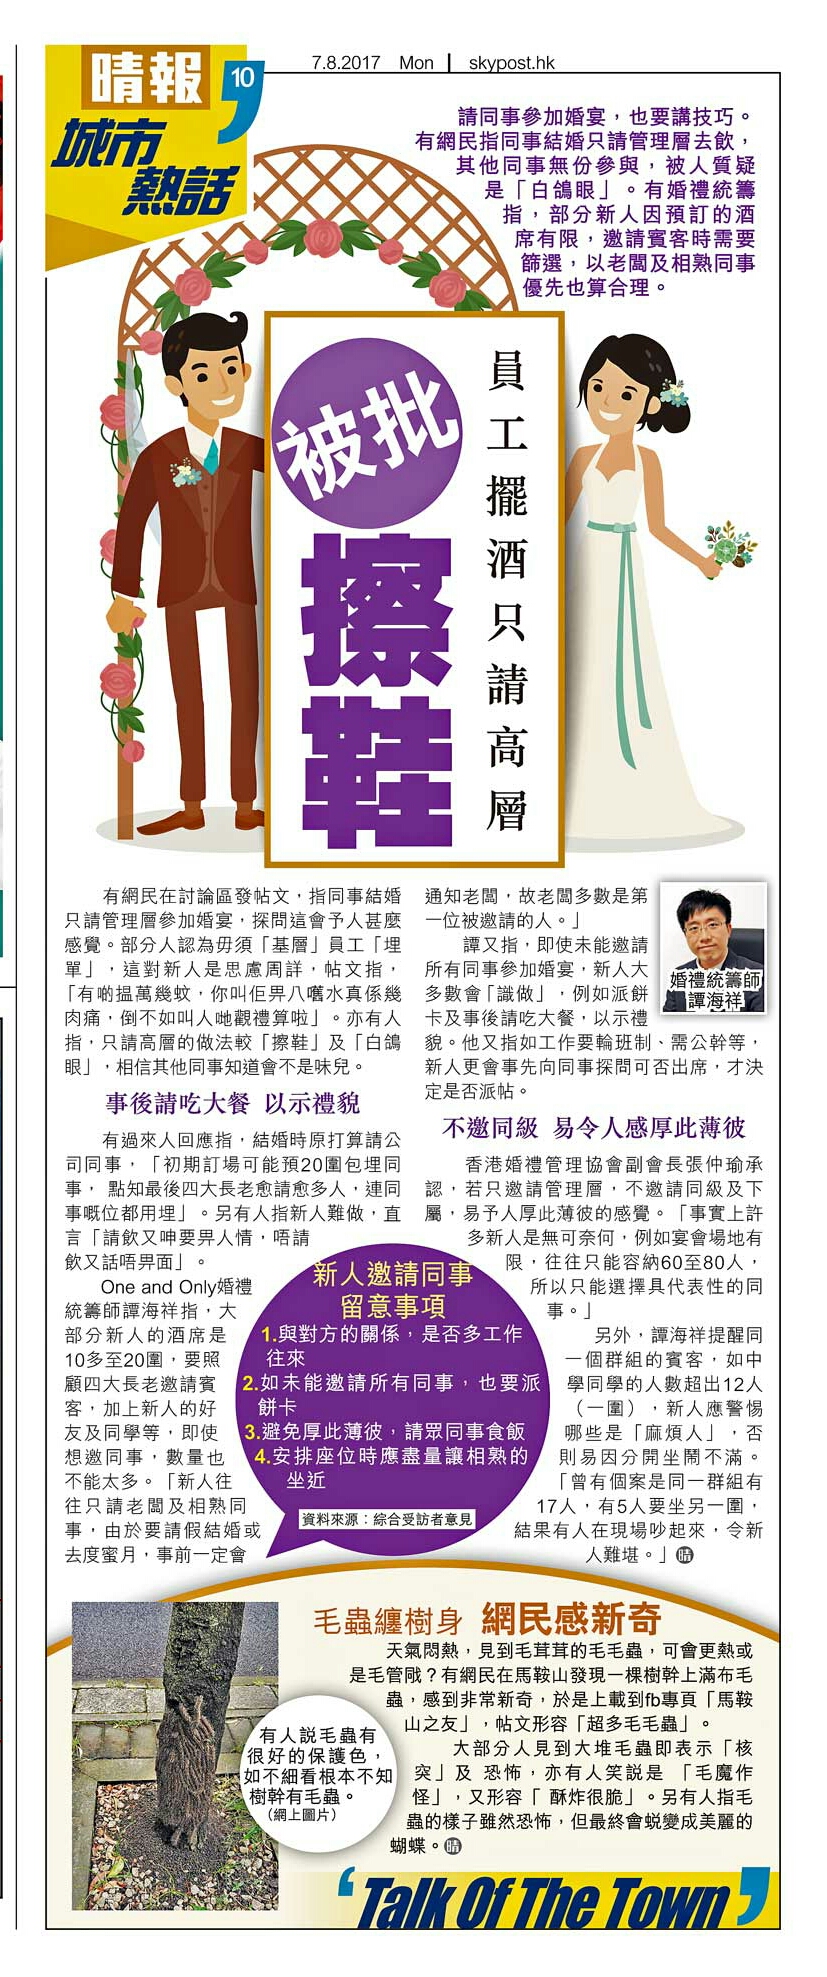 婚禮統籌師譚海祥Billy Tam之媒體報導: 員工擺酒只請高層 被批擦鞋